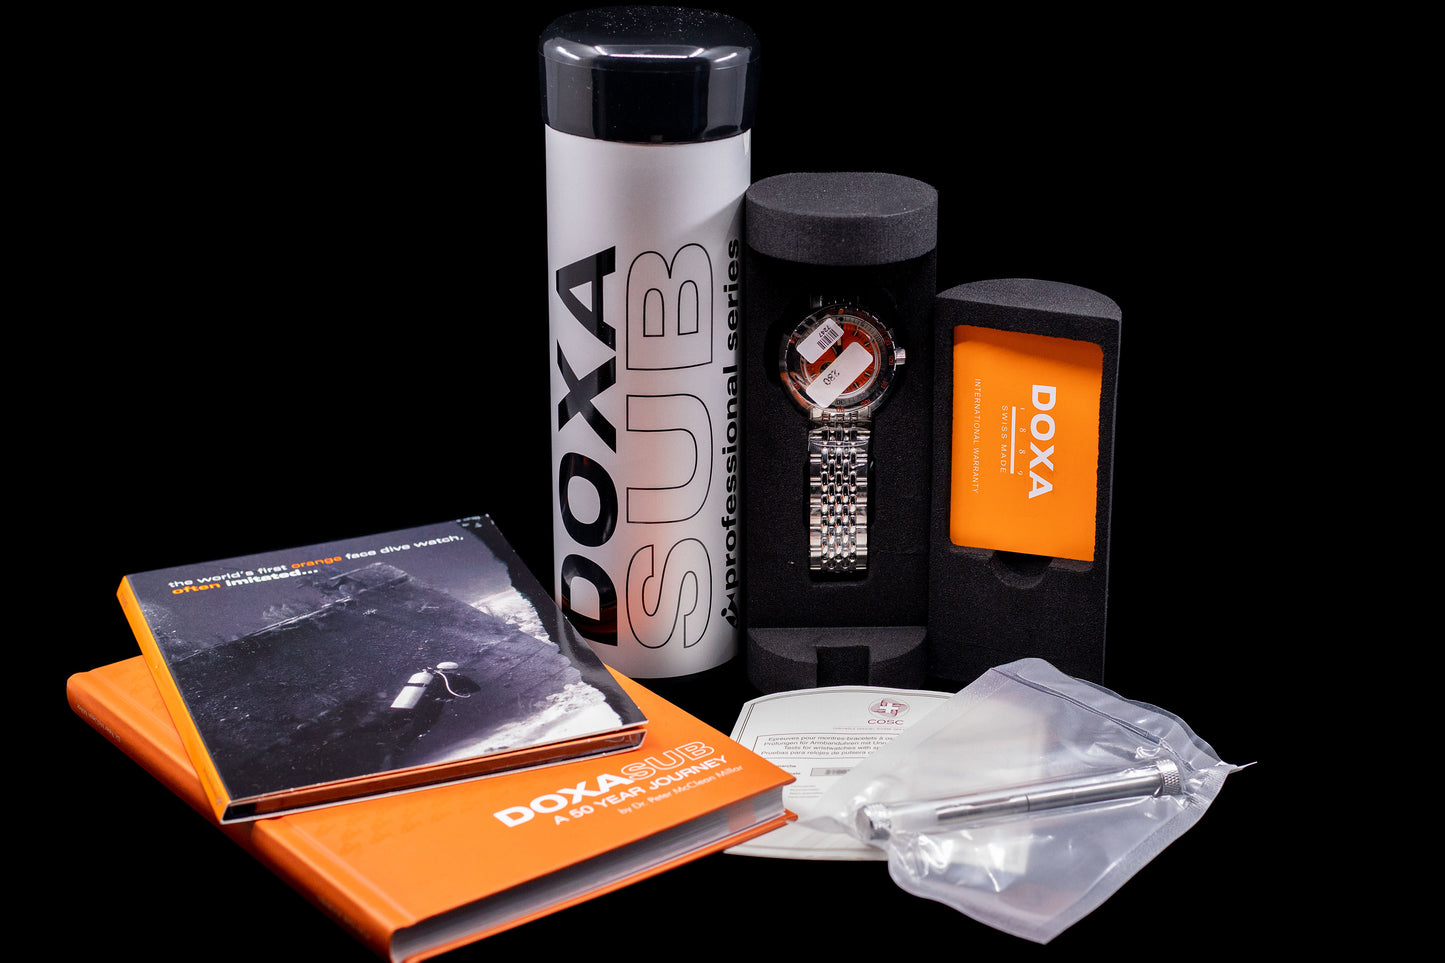 DOXA SUB 300 Professional 'Blacklung' Reissue